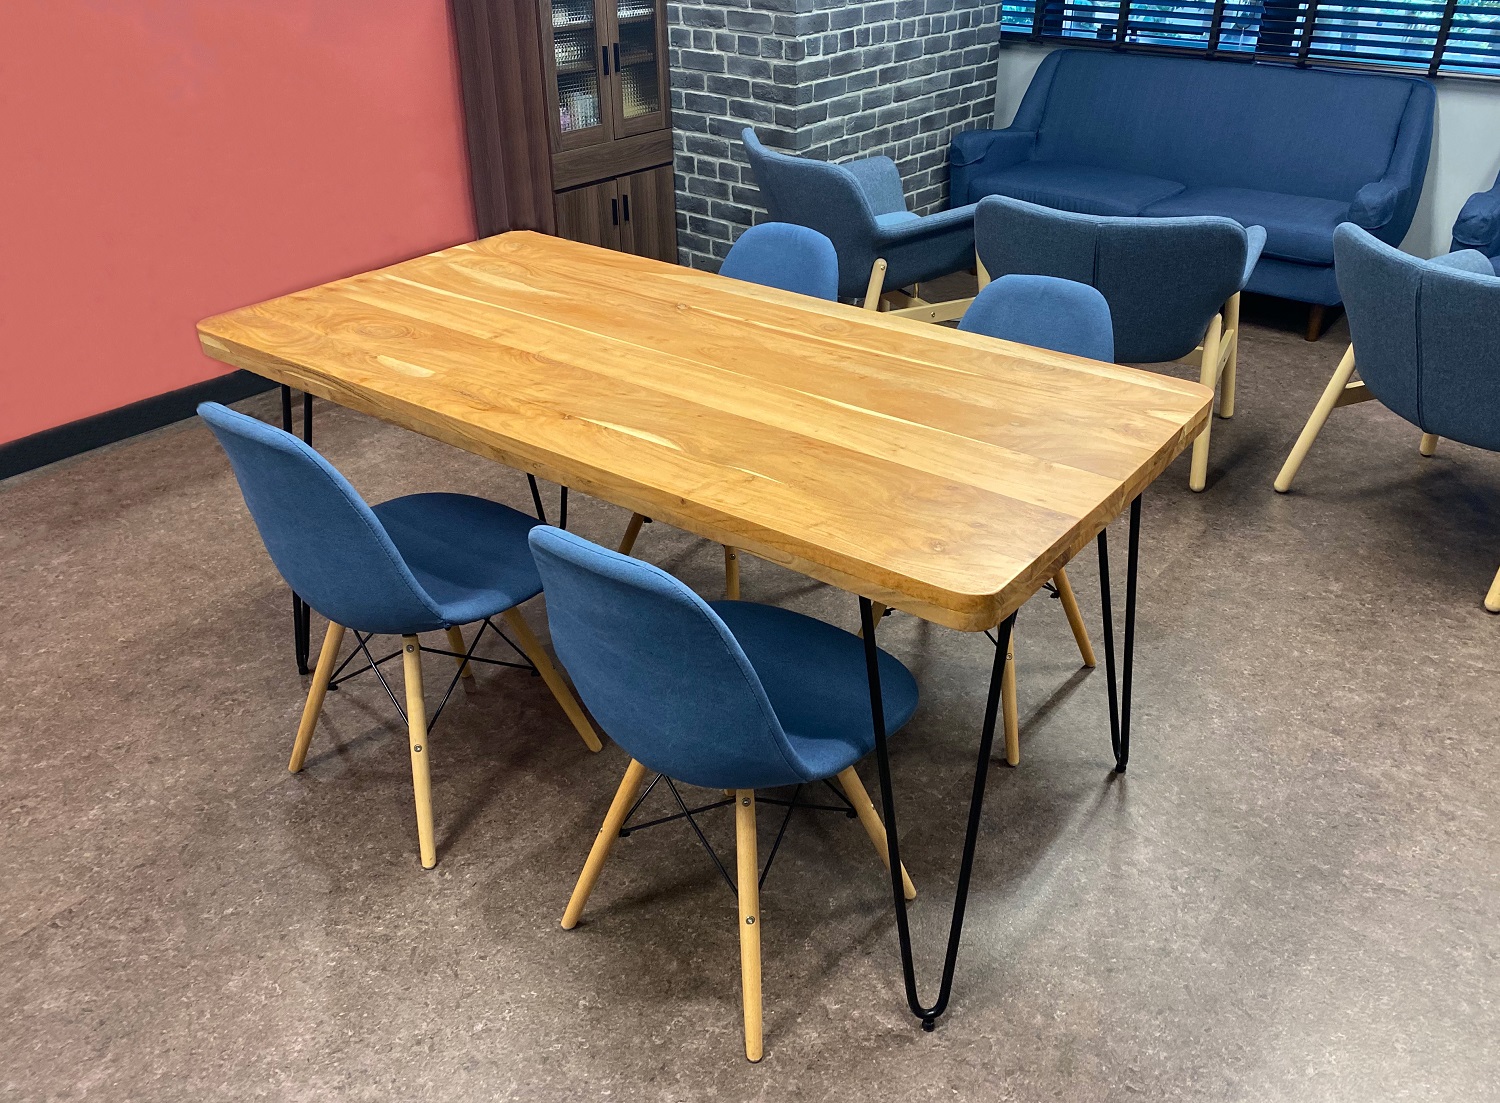 青の椅子が印象的なテーブル席